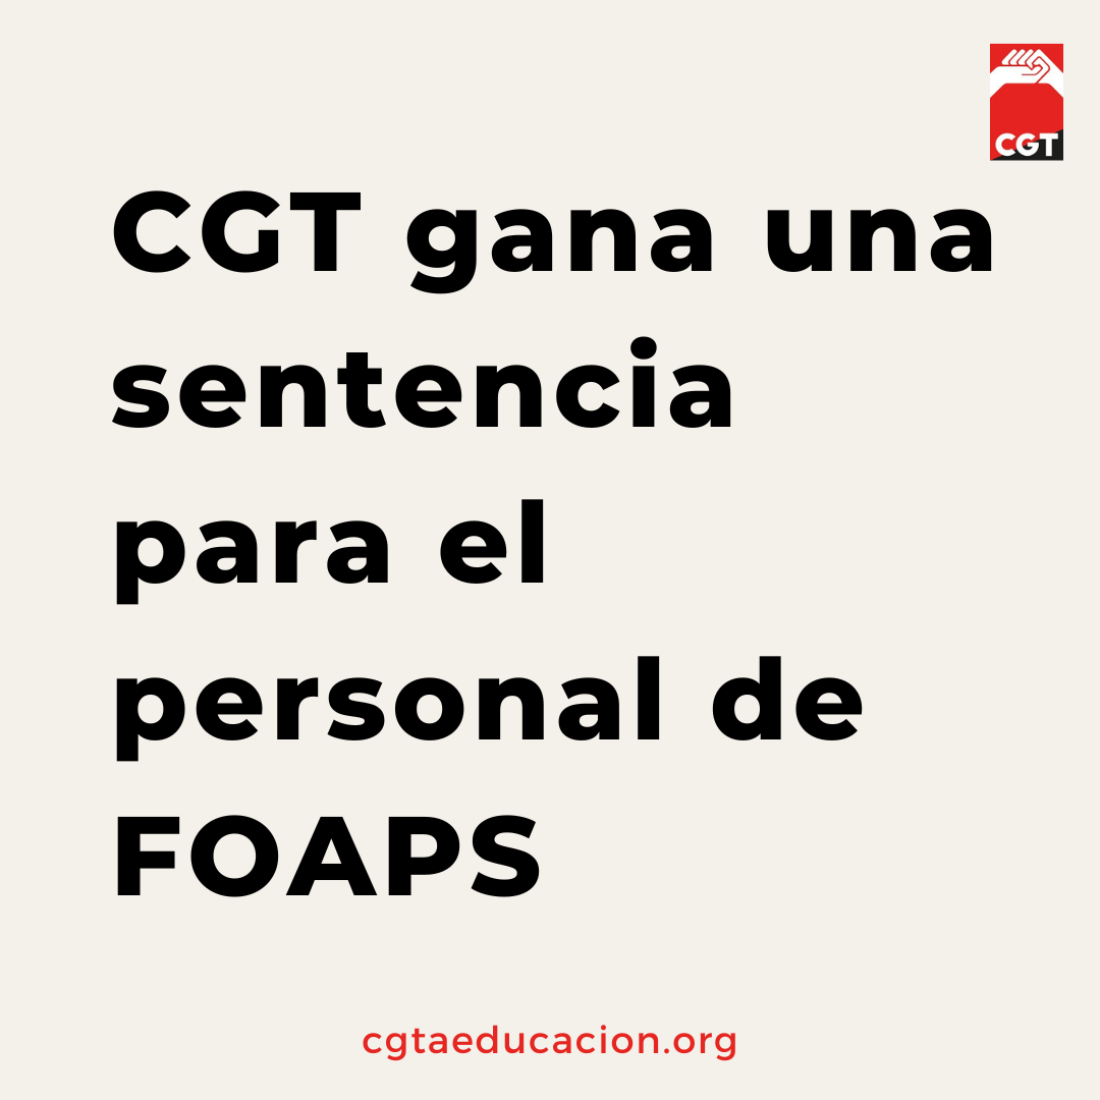 CGT en FOAPS consigue, a través de una sentencia, las mejoras incluidas en los centros educativos del Convenio de discapacidad.